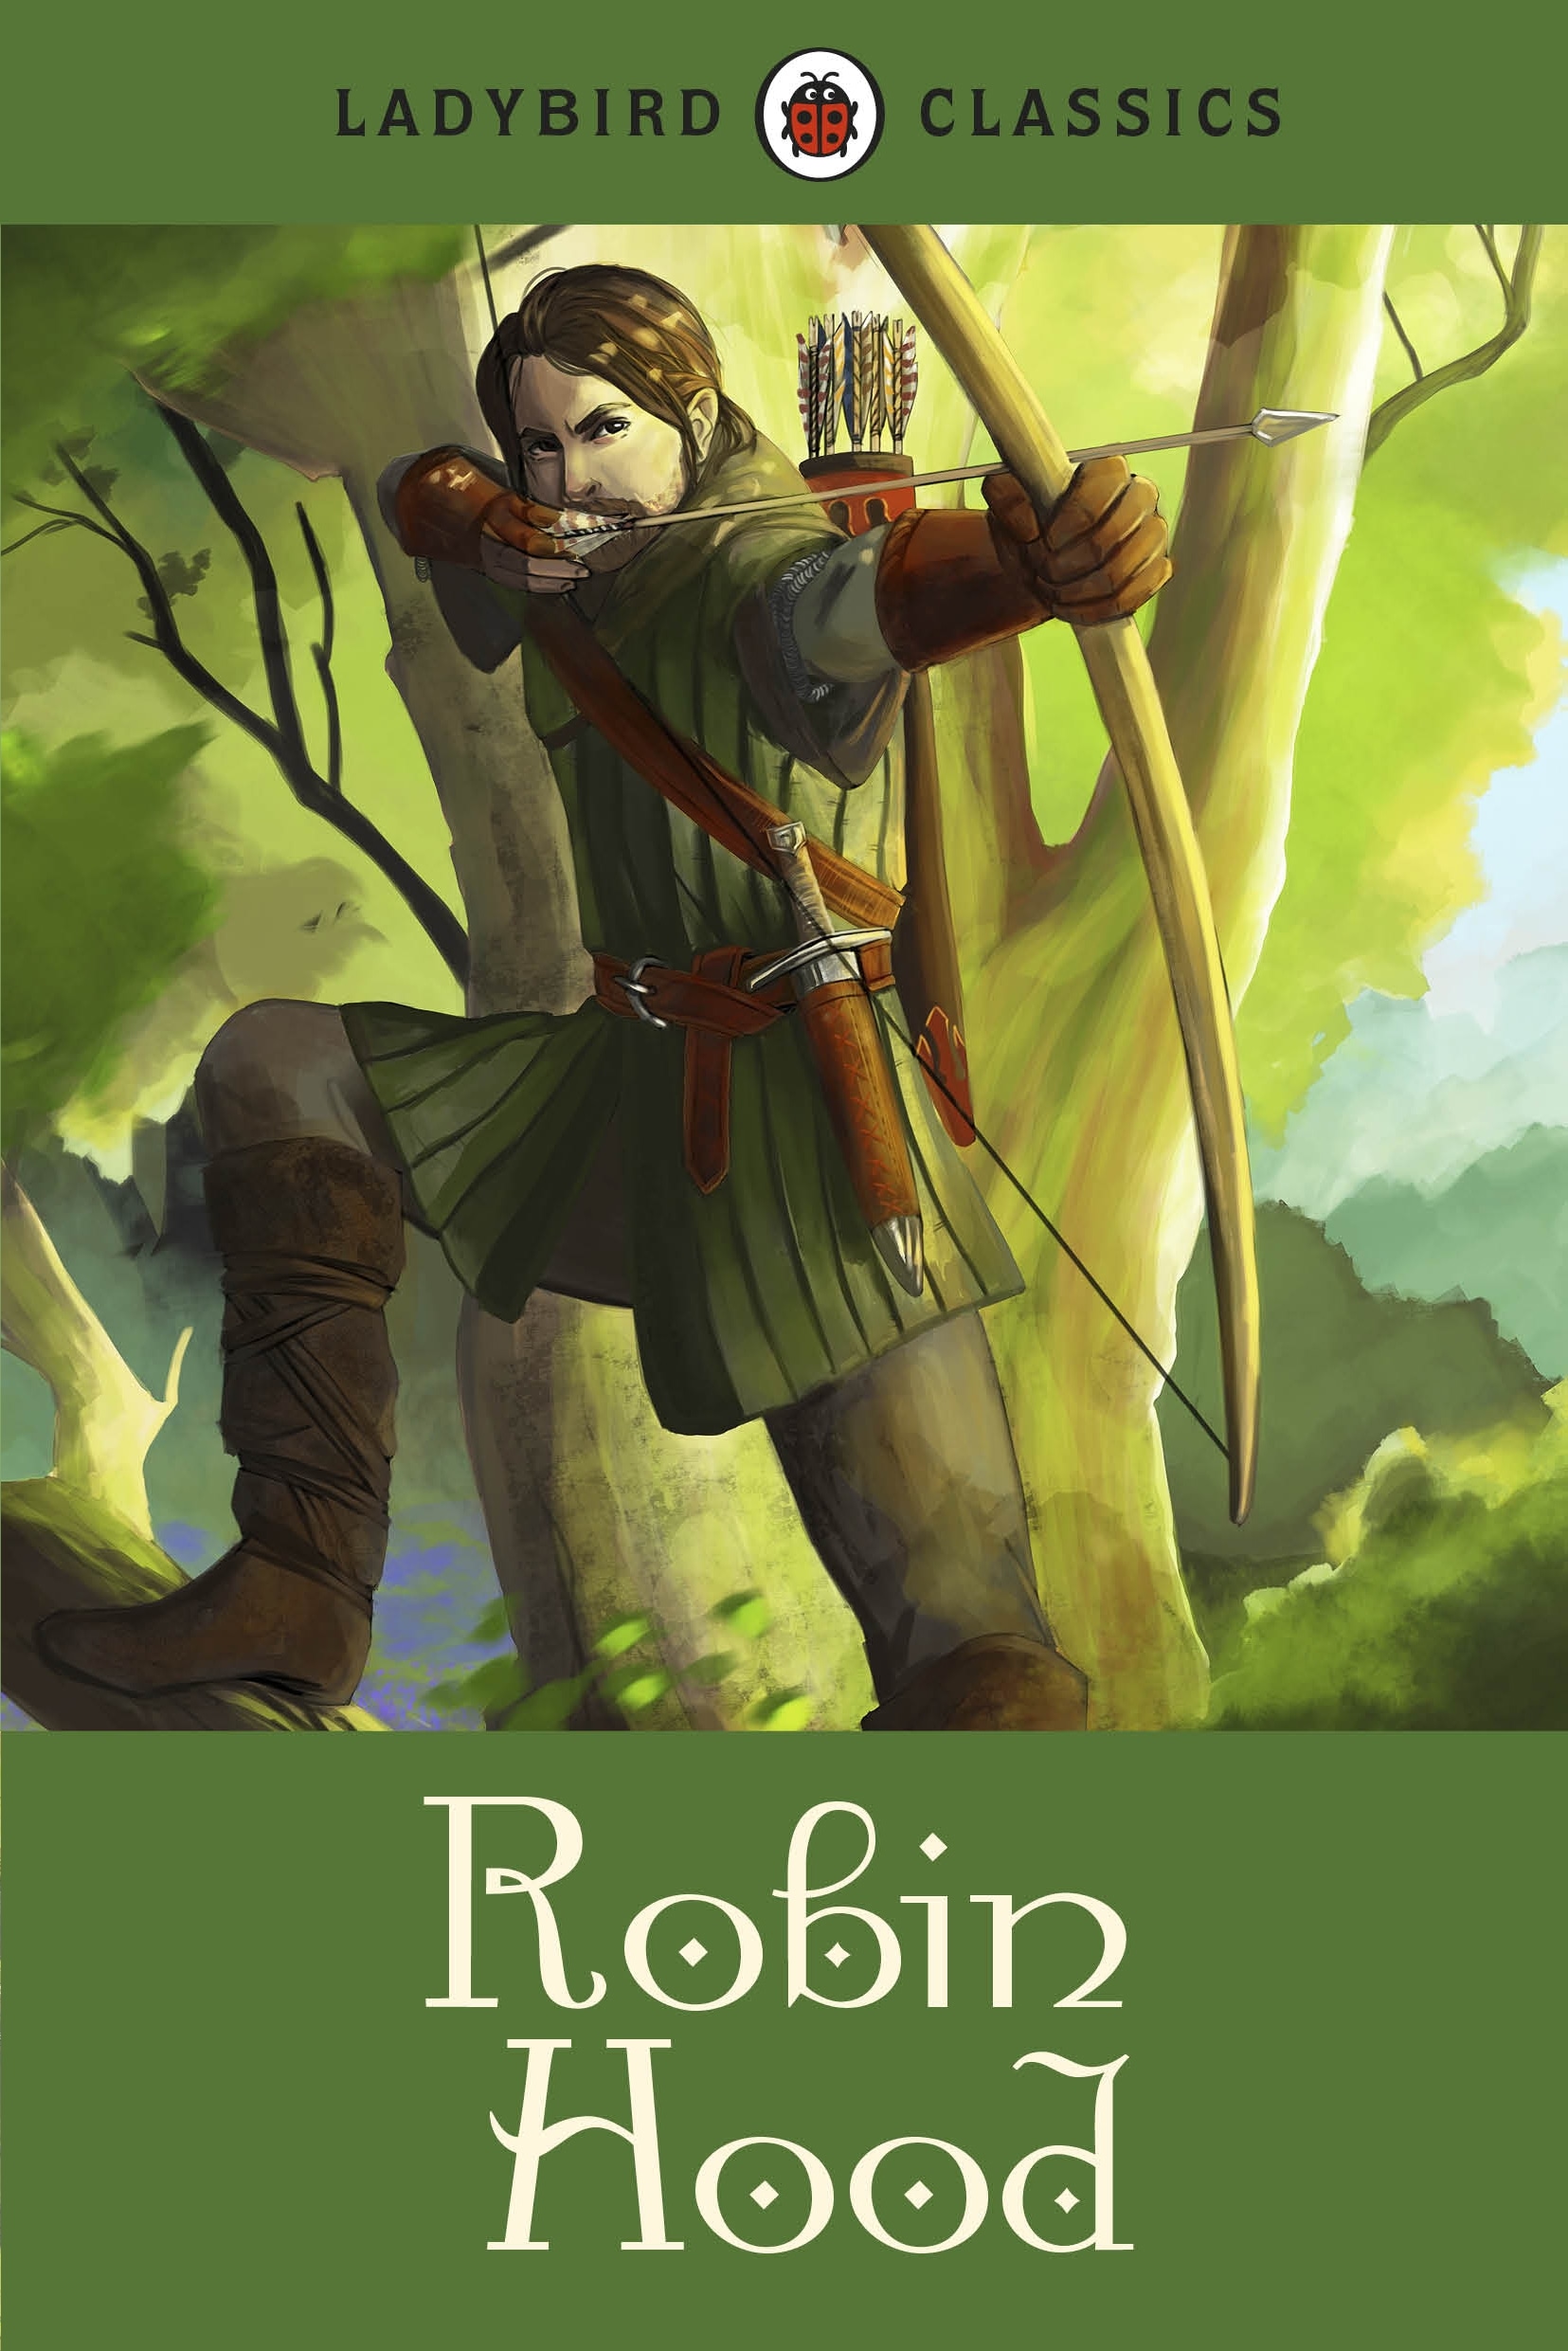 Book “Ladybird Classics: Robin Hood” by Desmond Dunkerley — April 2, 2015